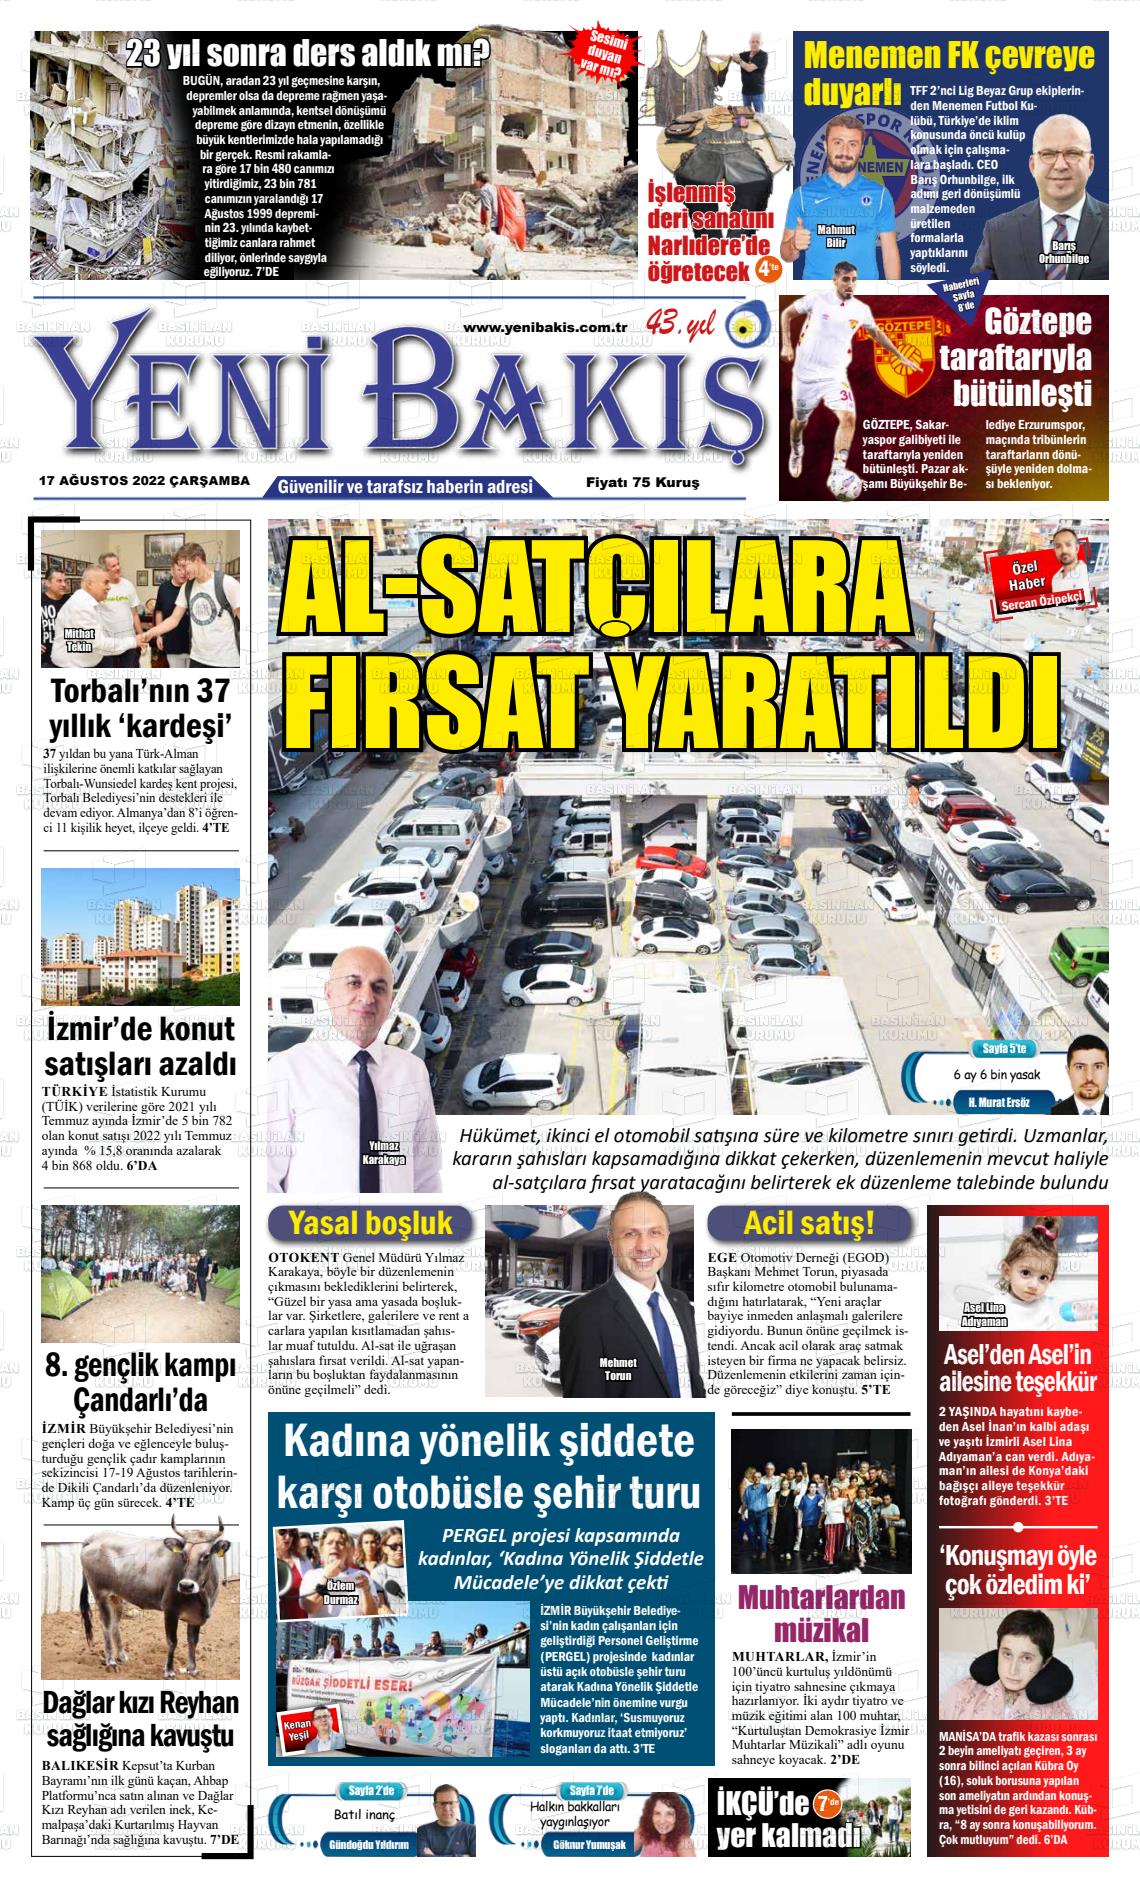 17 Ağustos 2022 Yeni Bakış Gazete Manşeti